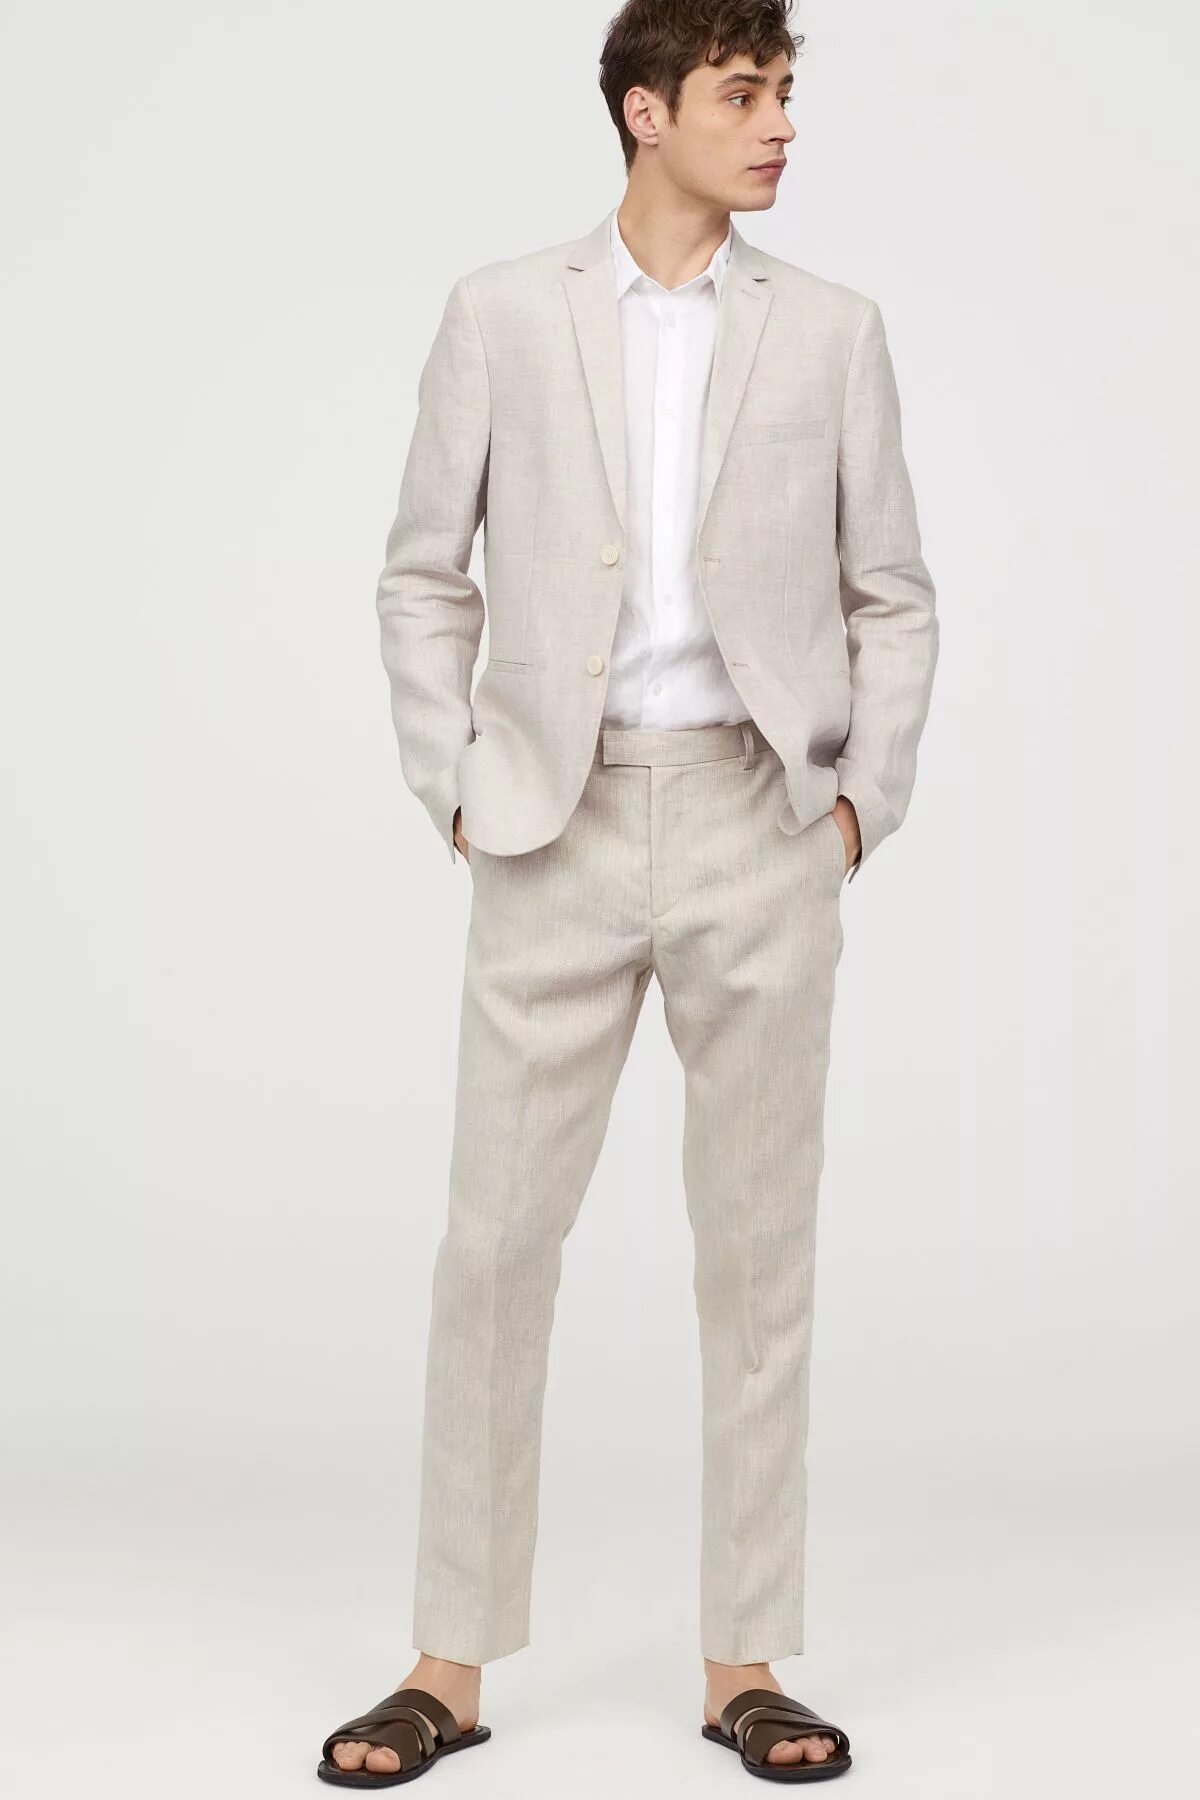 Костюм h&m Linen. Белый льняной костюм мужской. Светлый классический костюм. Льняной костюм мужской классический. Купить мужской костюм лен